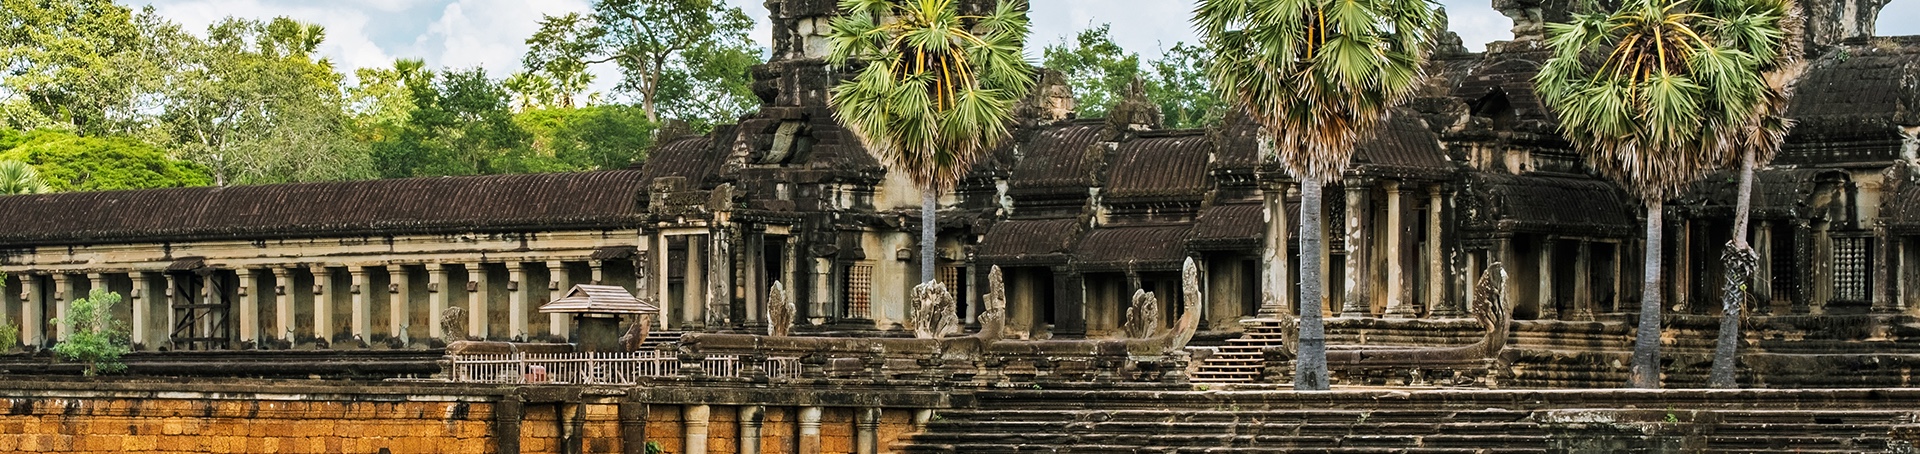 Angkor Wat Banner